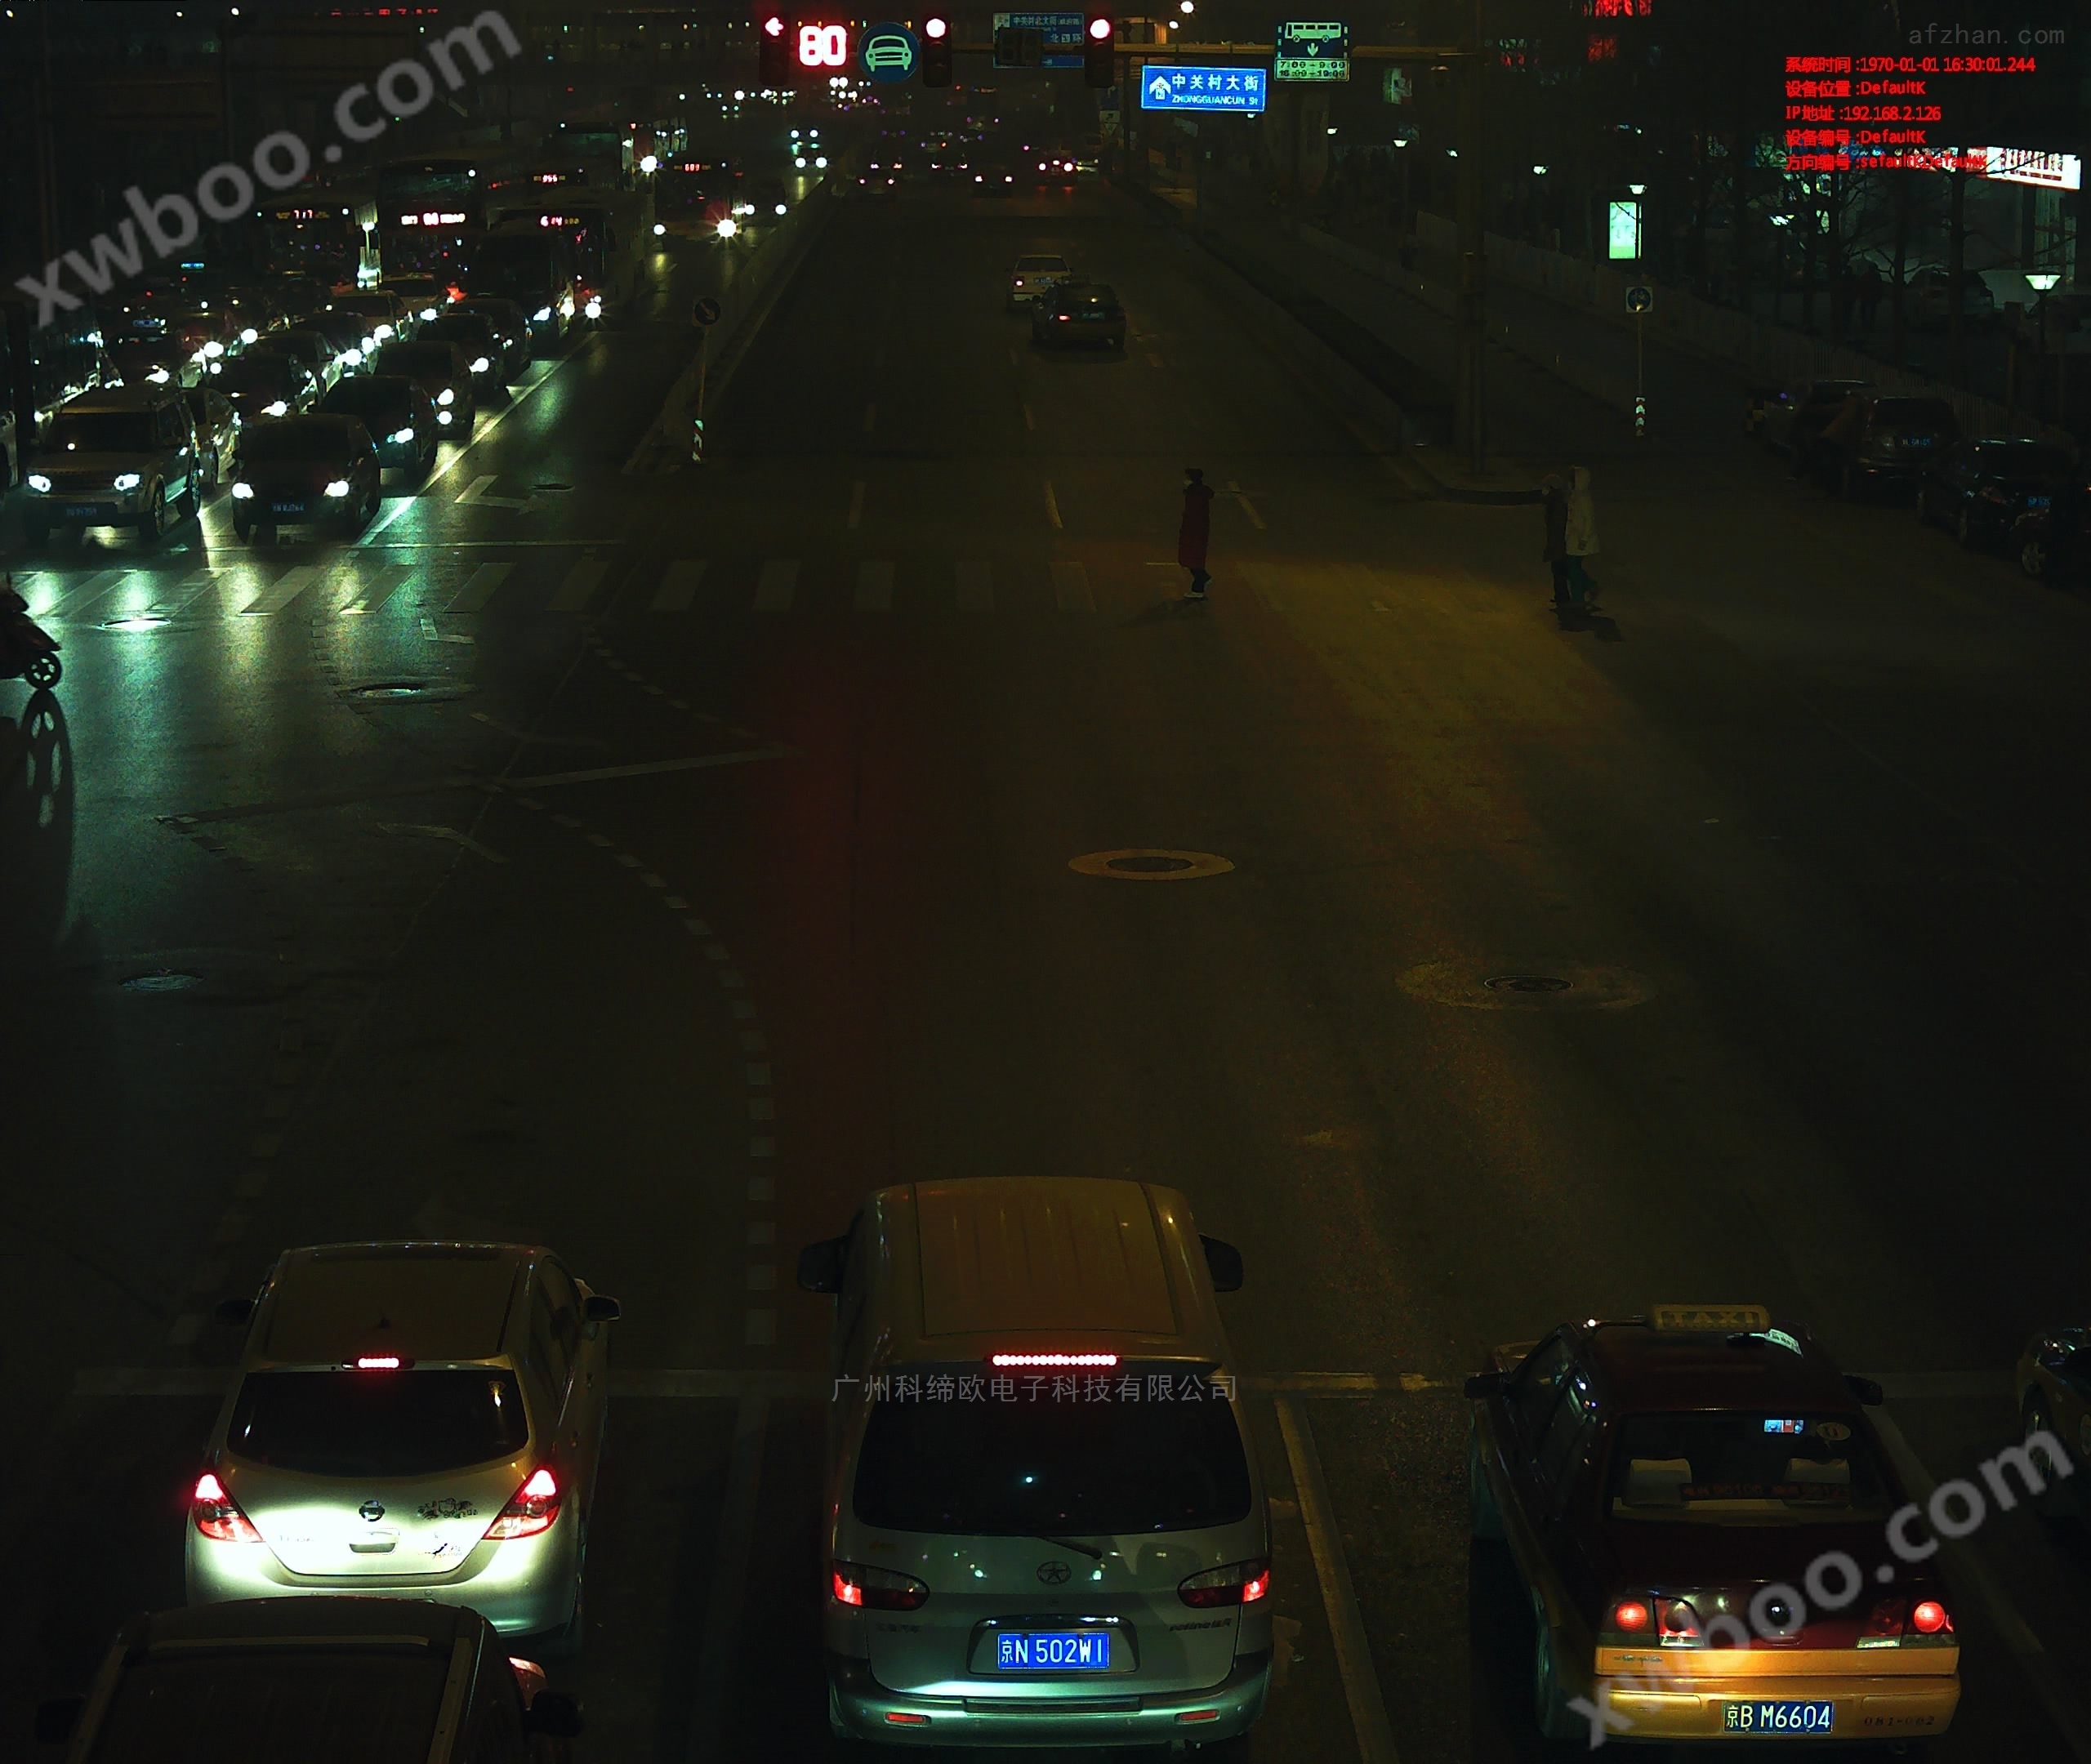 交通信号灯智能控制系统,智能红绿灯